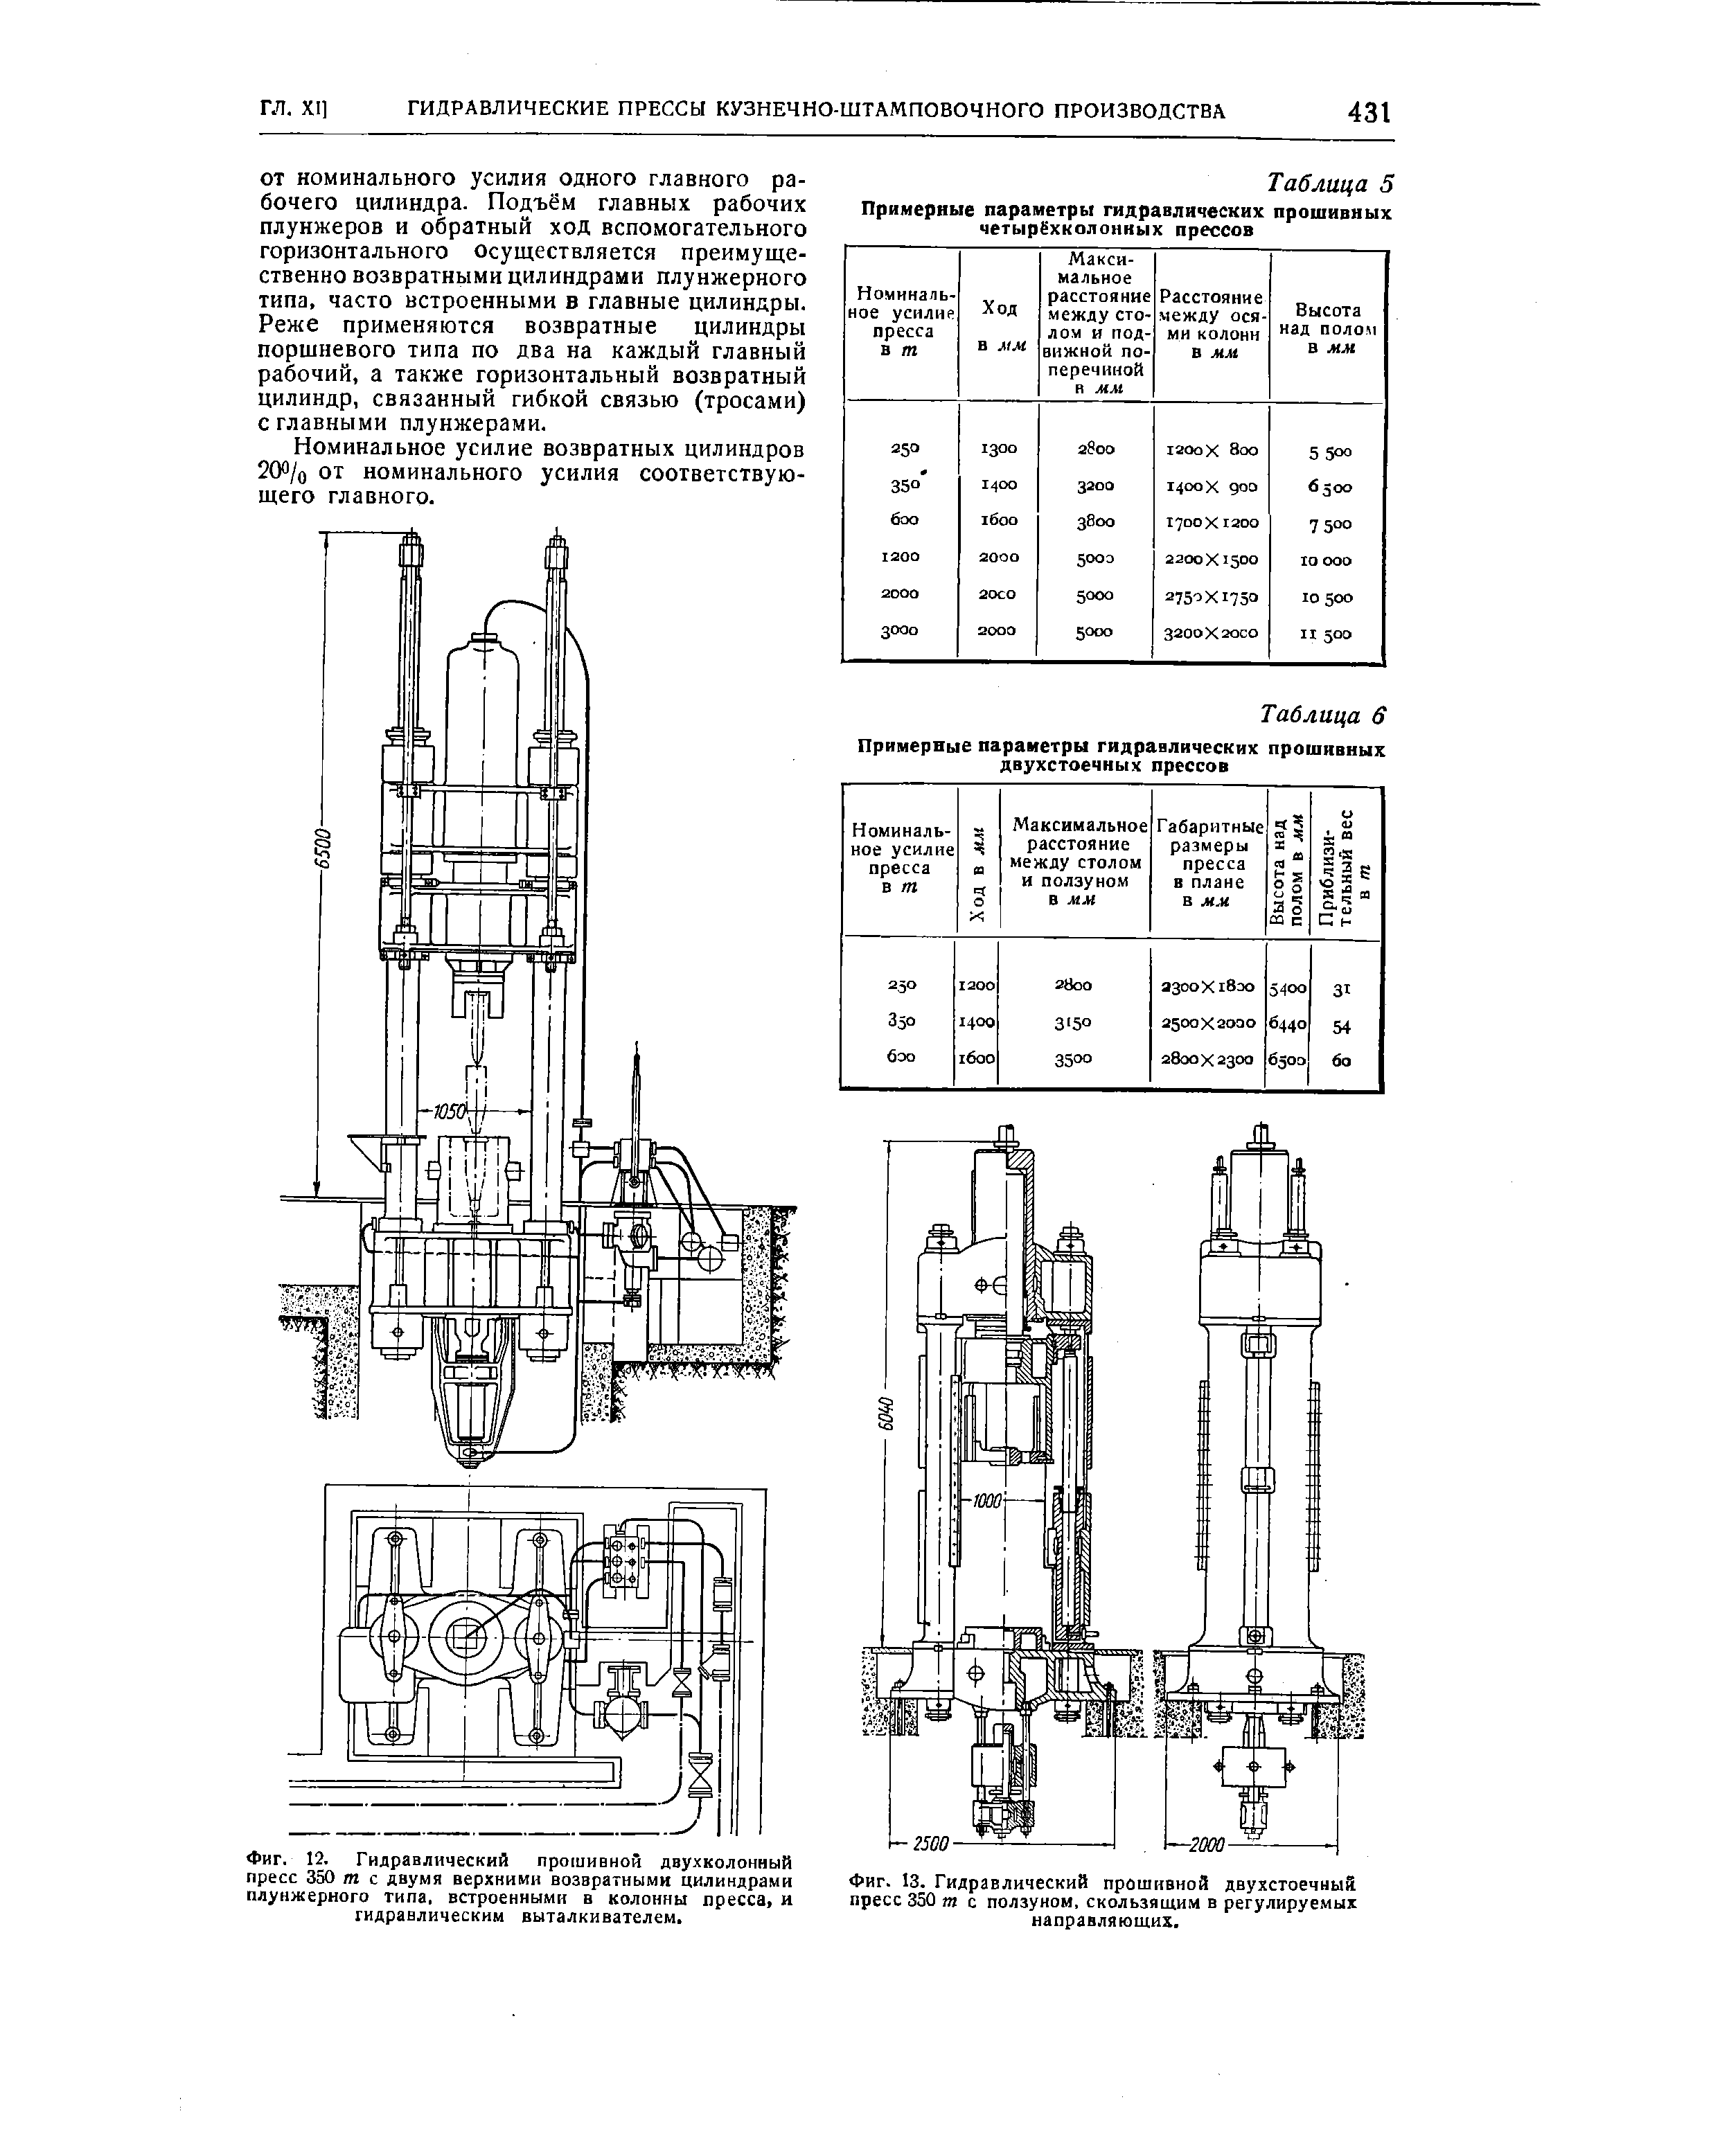 Фиг. 12. Гидравлический прошивной двухколонный пресс 350 т с двумя верхними возвратными цилиндрами плунжерного типа, встроенными в колонны пресса и гидравлическим выталкивателем.
